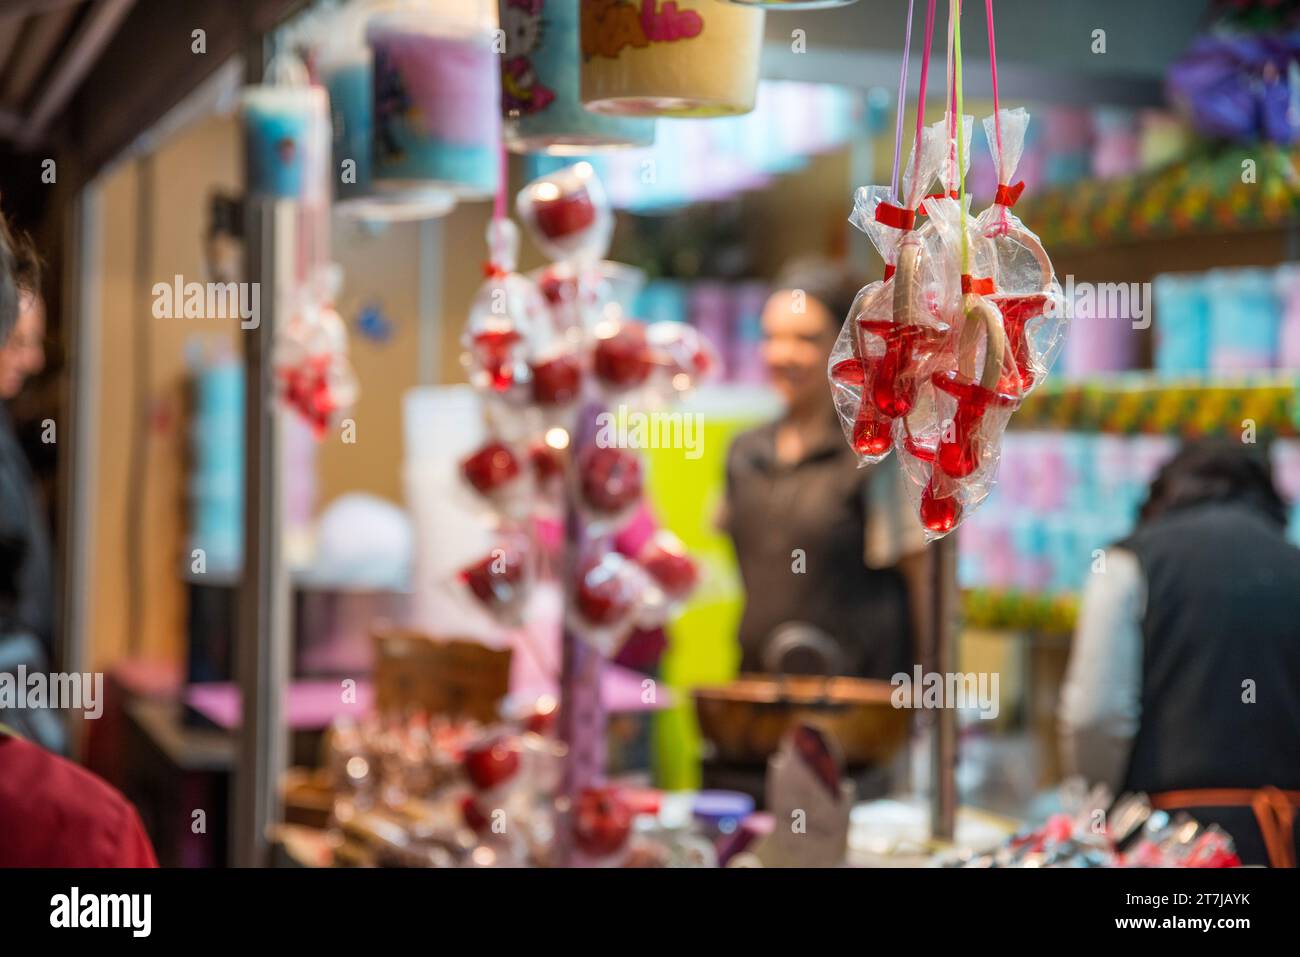 Capturez la douceur de la saison : les sucettes de bonbons éclatantes occupent le devant de la scène lors de la foire de Noël festive, tentant avec des délices sucrés pour holida Banque D'Images